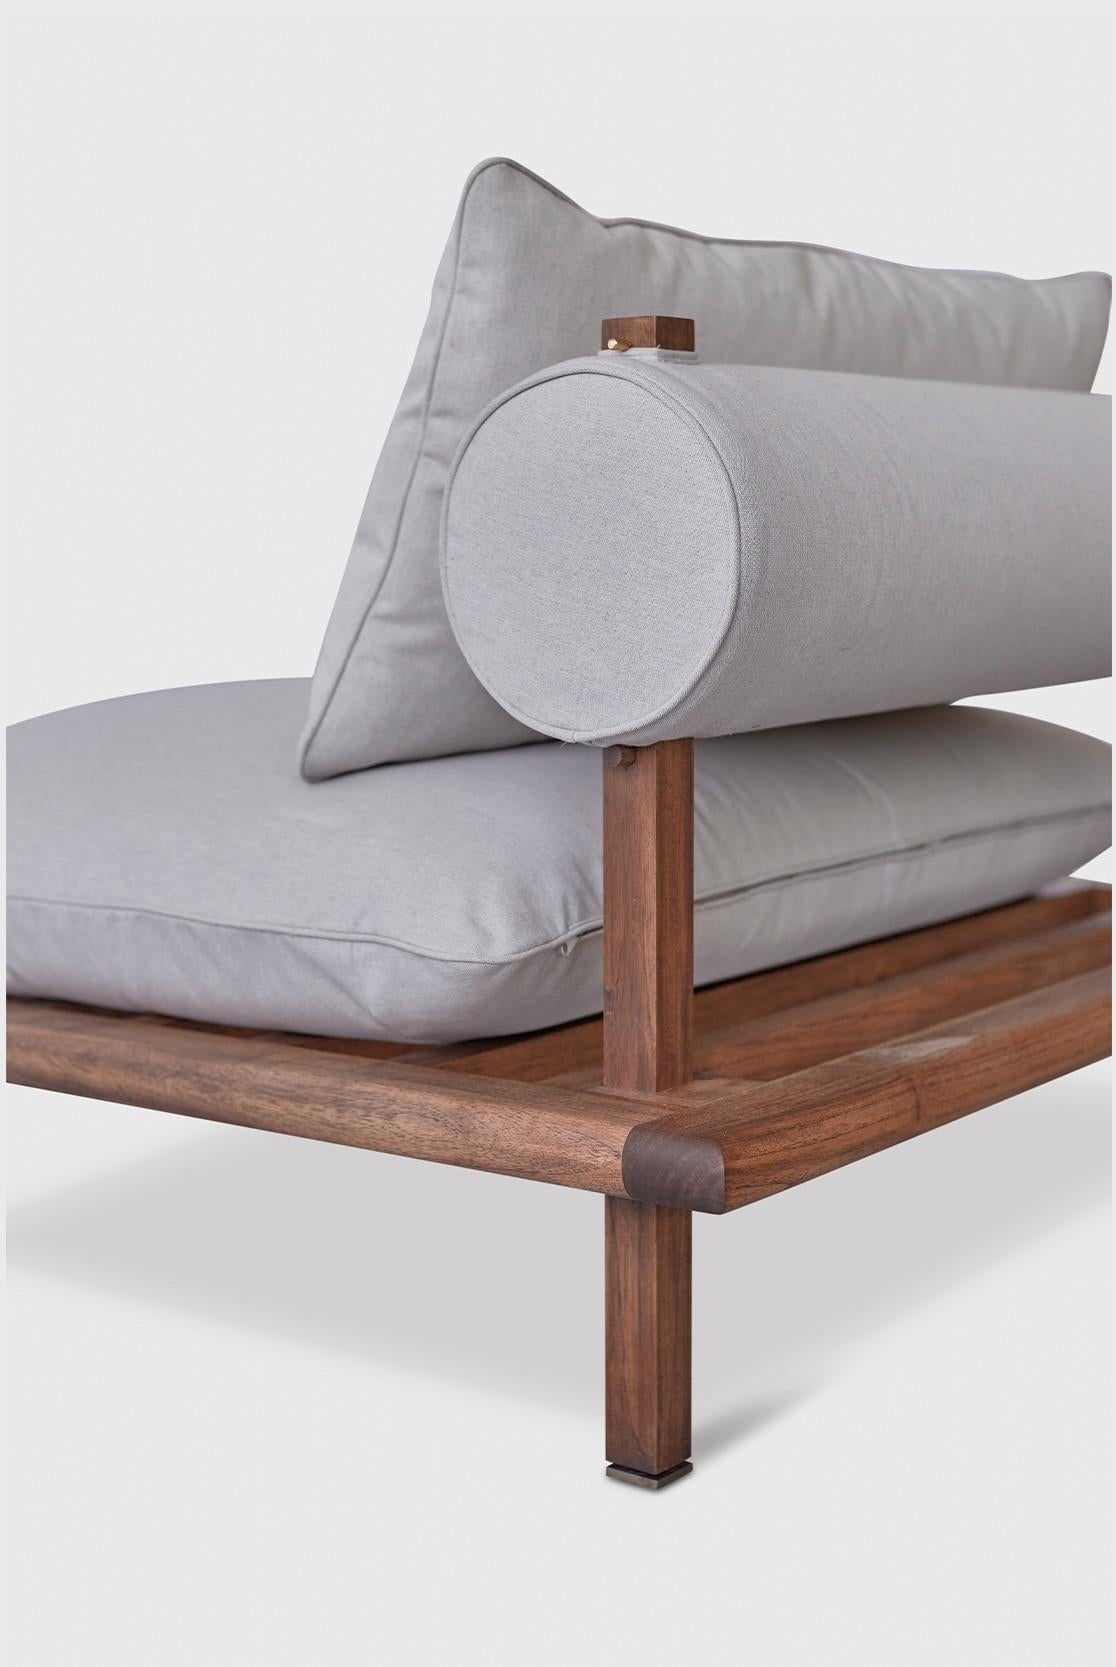 Contemporary Nerthus Outdoor Sofa by Atra Design For Sale